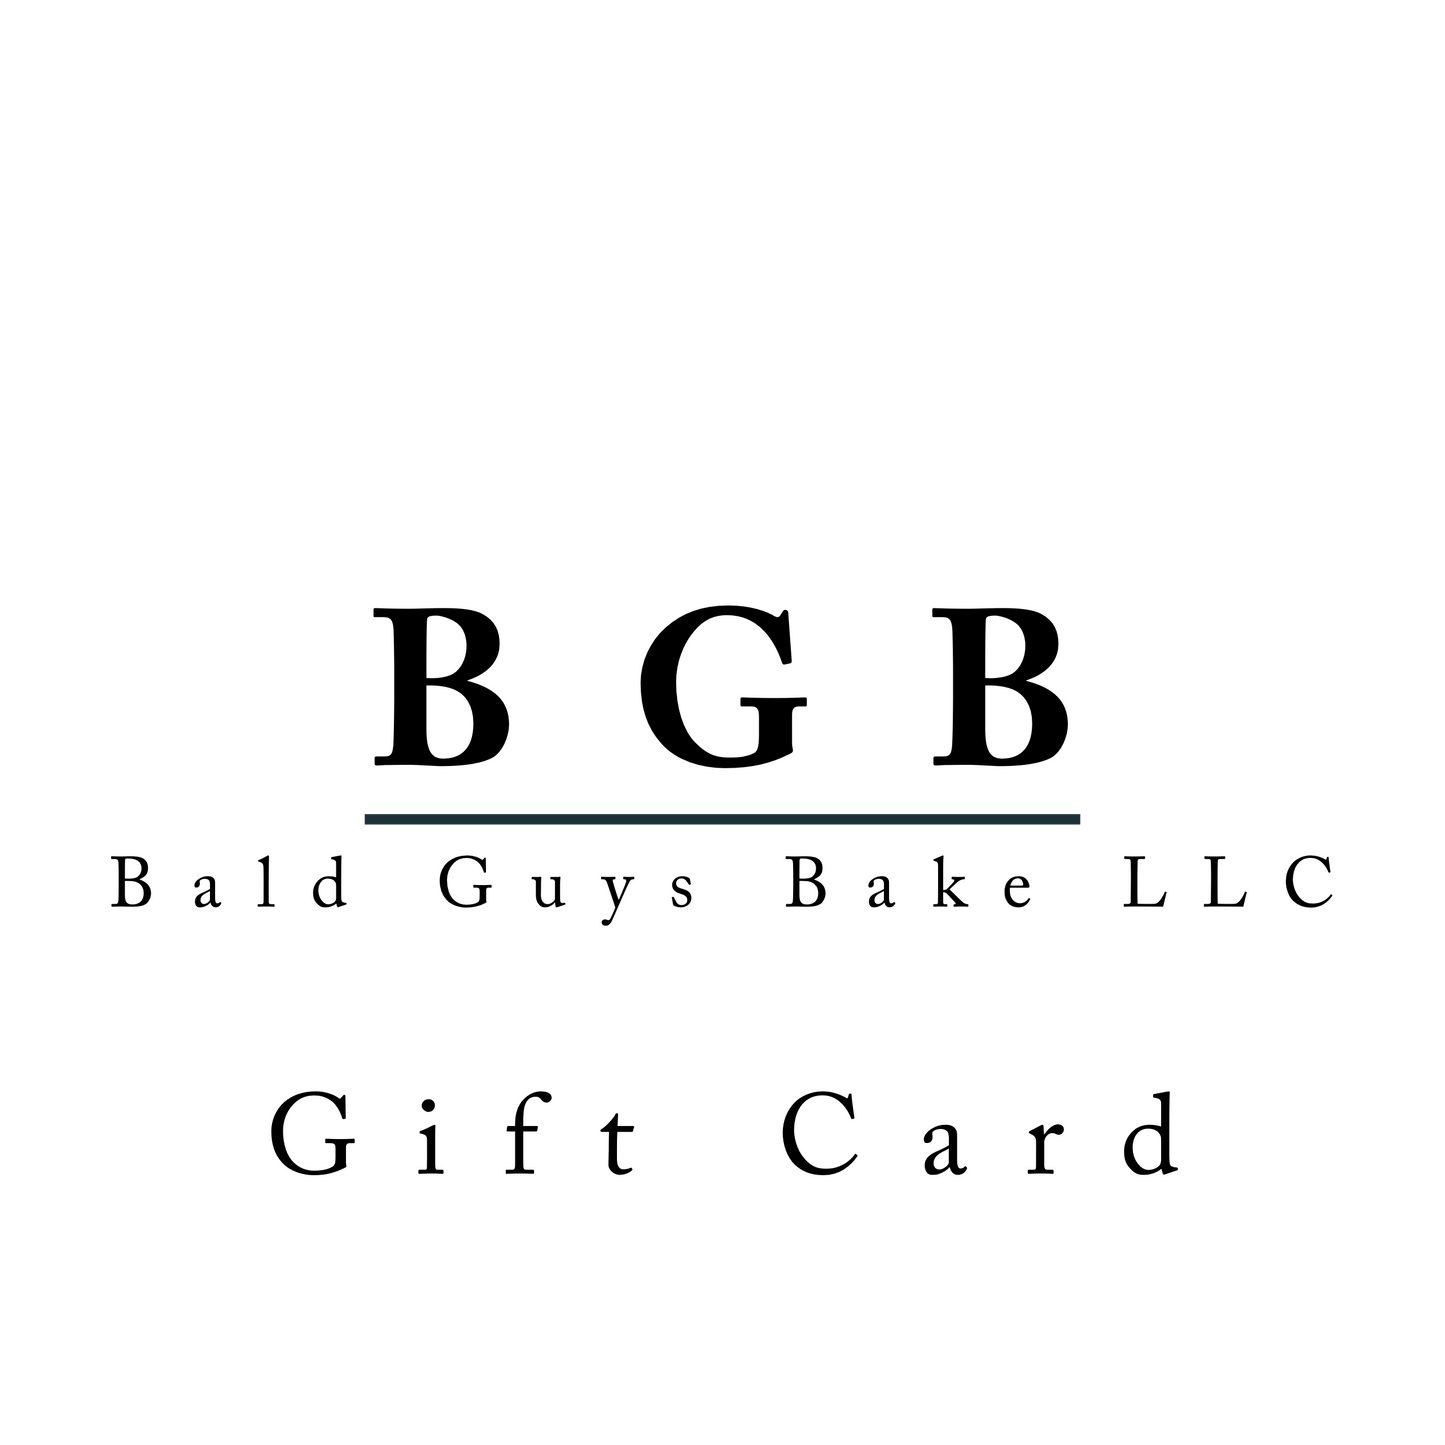 Bald Guys Bake Gift Card